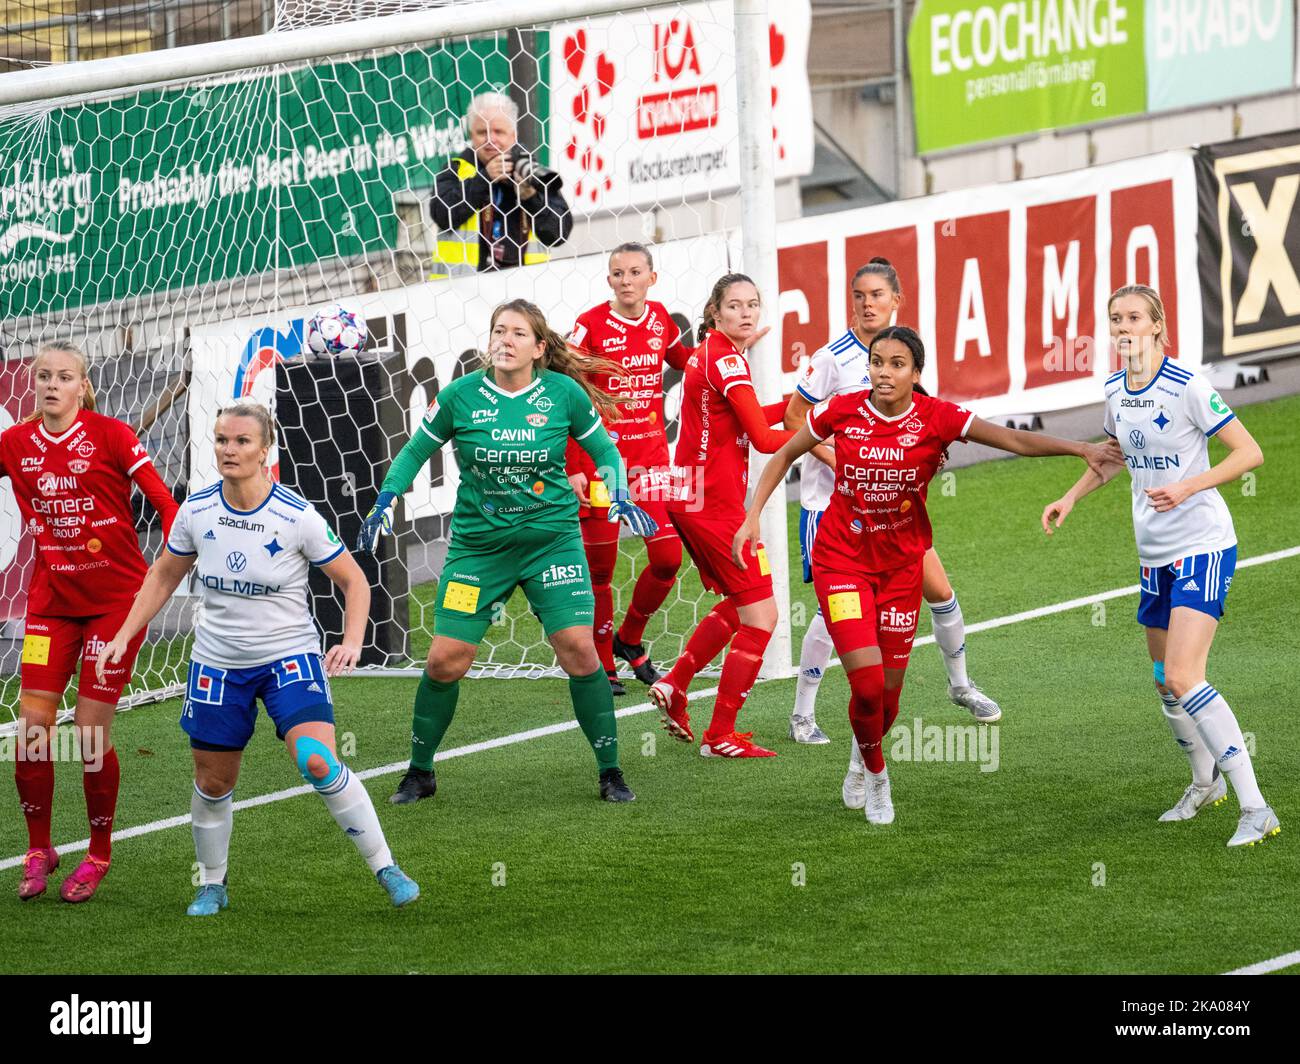 Histórico partido de fútbol femenino en Platinumcars Arena en Norrköping entre IFK Norrköping y Bergdalens IK en el sueco de segunda categoría Elitettan. Foto de stock